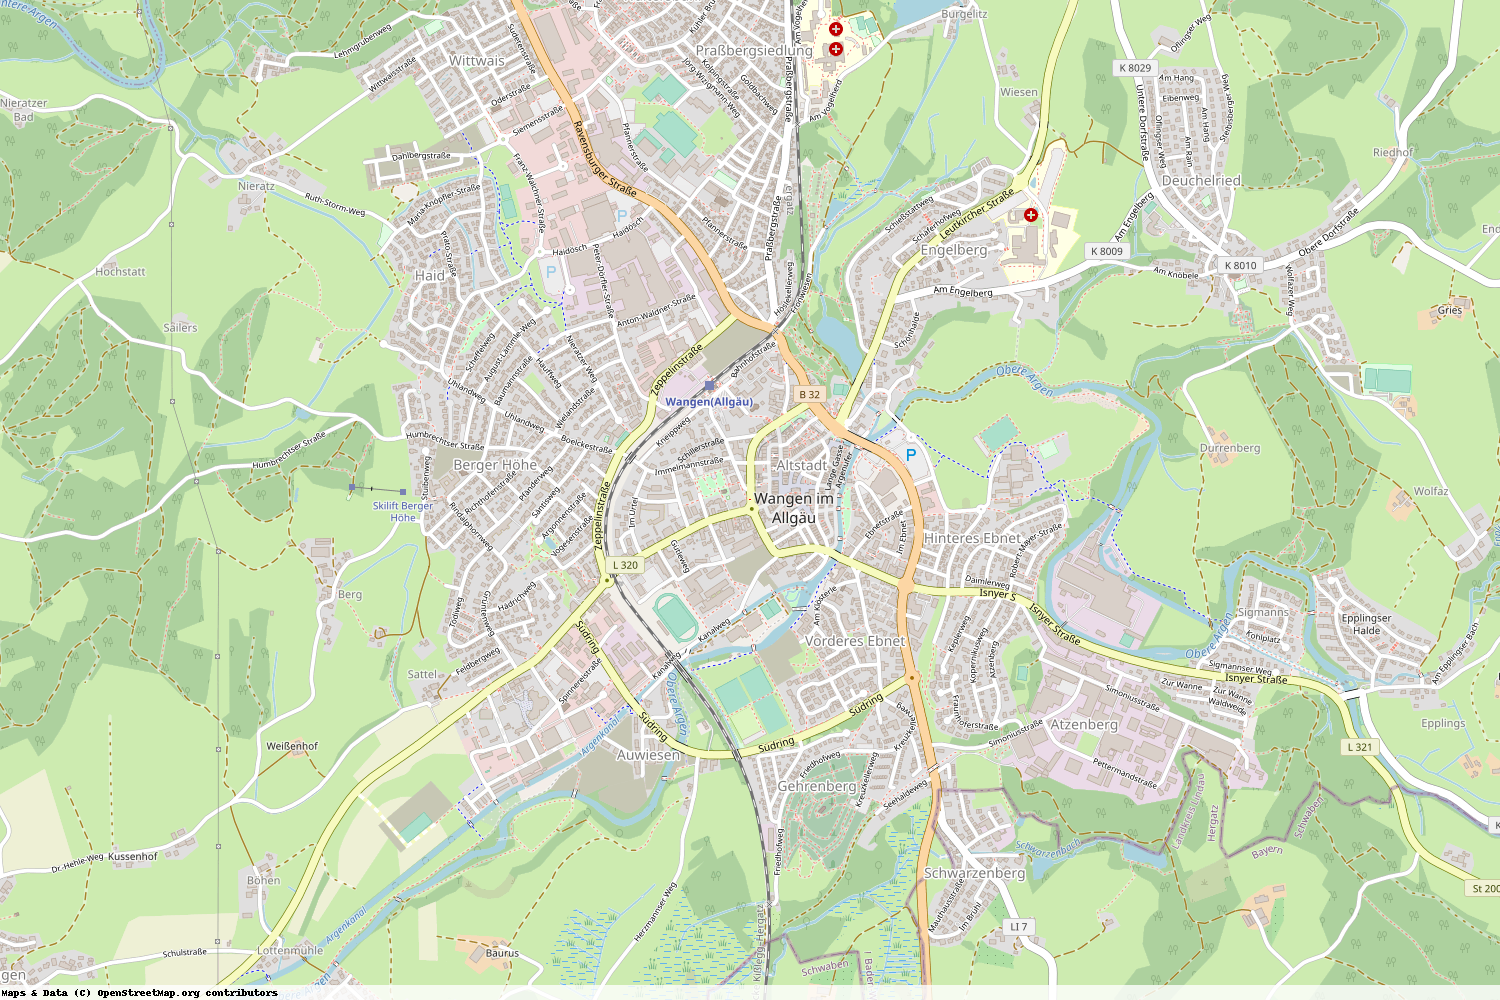 Ist gerade Stromausfall in Baden-Württemberg - Ravensburg - Wangen im Allgäu?